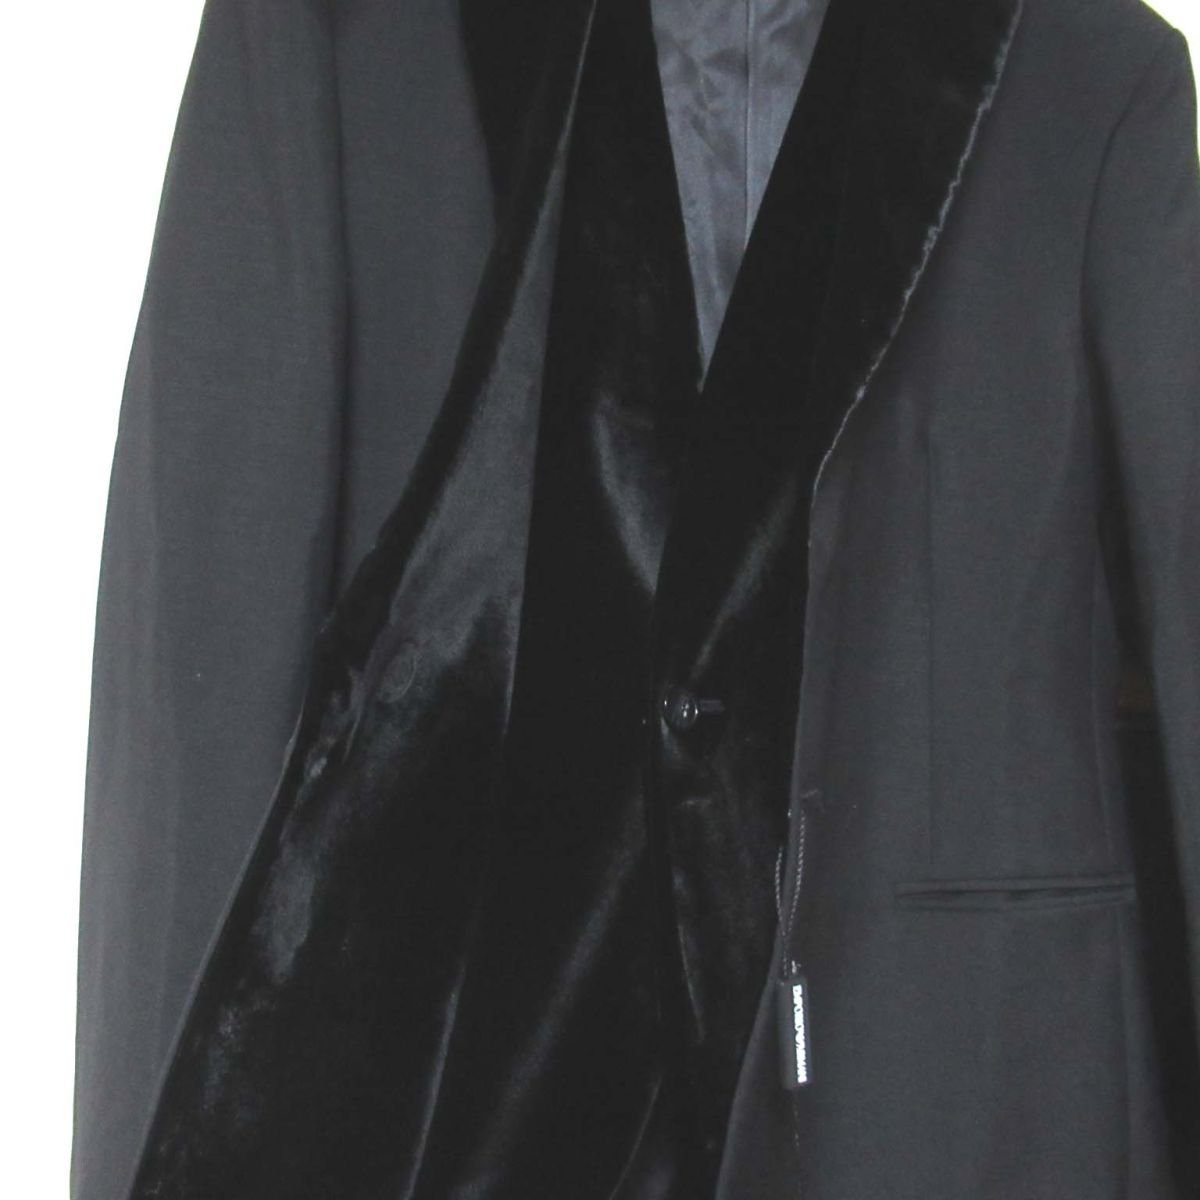 未使用品 EMPORIO ARMAN エンポリオアルマーニ タキシード テーラードジャケット+スラックスパンツ スーツ セットアップ 50サイズ ブラック_画像4